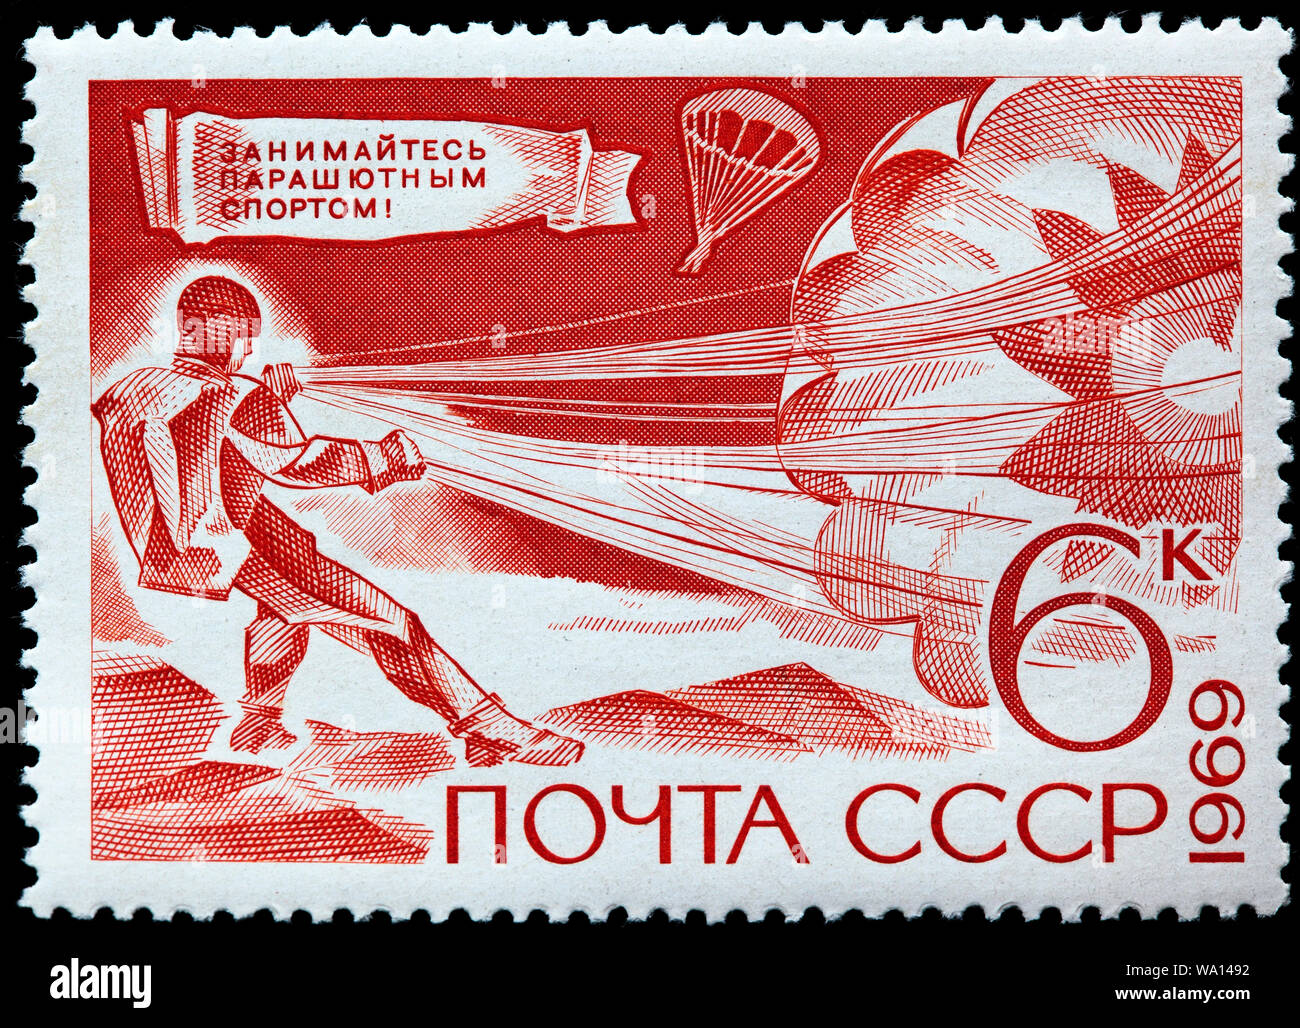 Il paracadute, tecnico sportivo, francobollo, Russia, URSS, 1969 Foto Stock